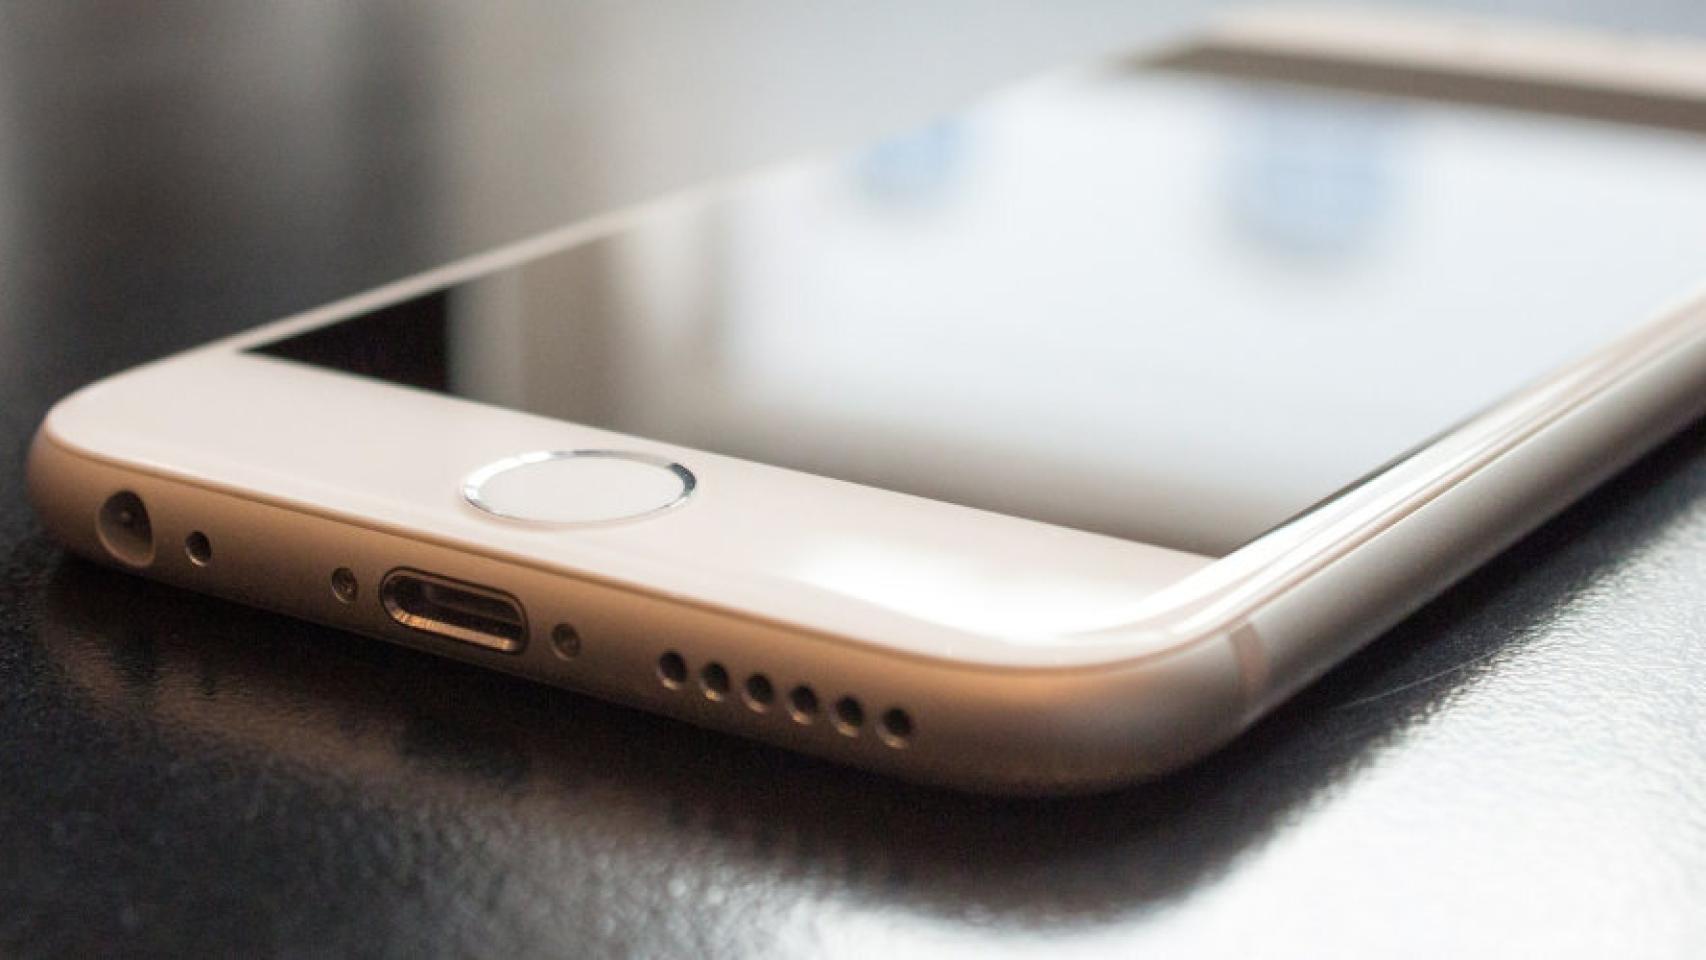 Problemas de batería en iPhone SE 2020: fallos y precio de reparación